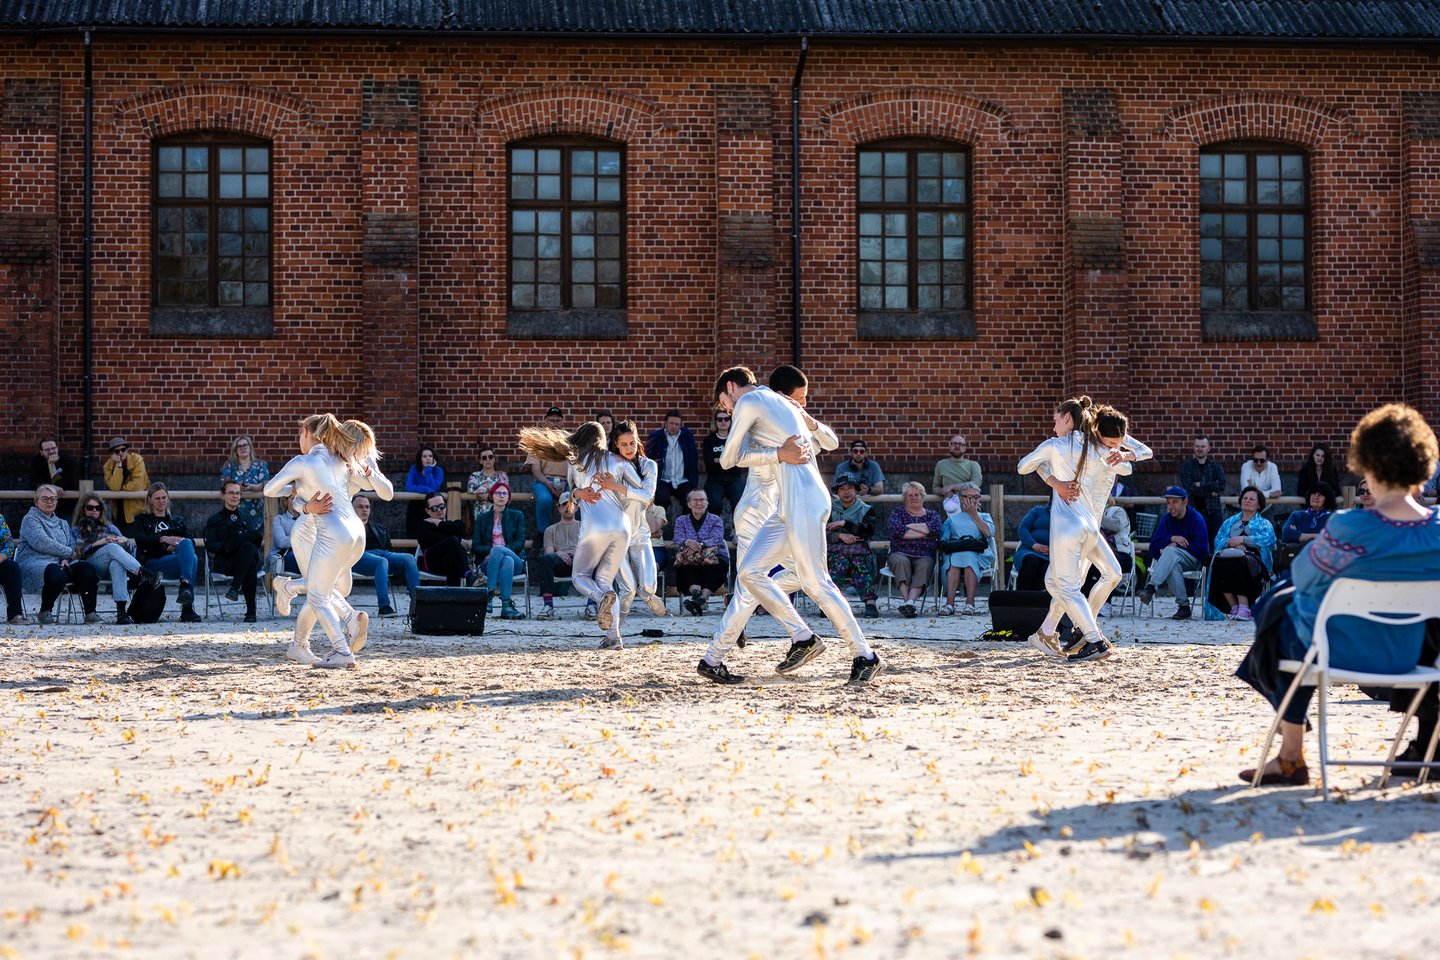  Festivalis festivalyje: Žagarė – vienas iš trijų Lietuvos miestų, kurį aplankė danų choreografas Taneli Törmä drauge su festivaliu „Naujasis Baltijos Šokis“. Čia jie pristatė šokį, sukurtą bendruomenei – „ALIEN“.<br> G.Gaidjurgytės nuotr.